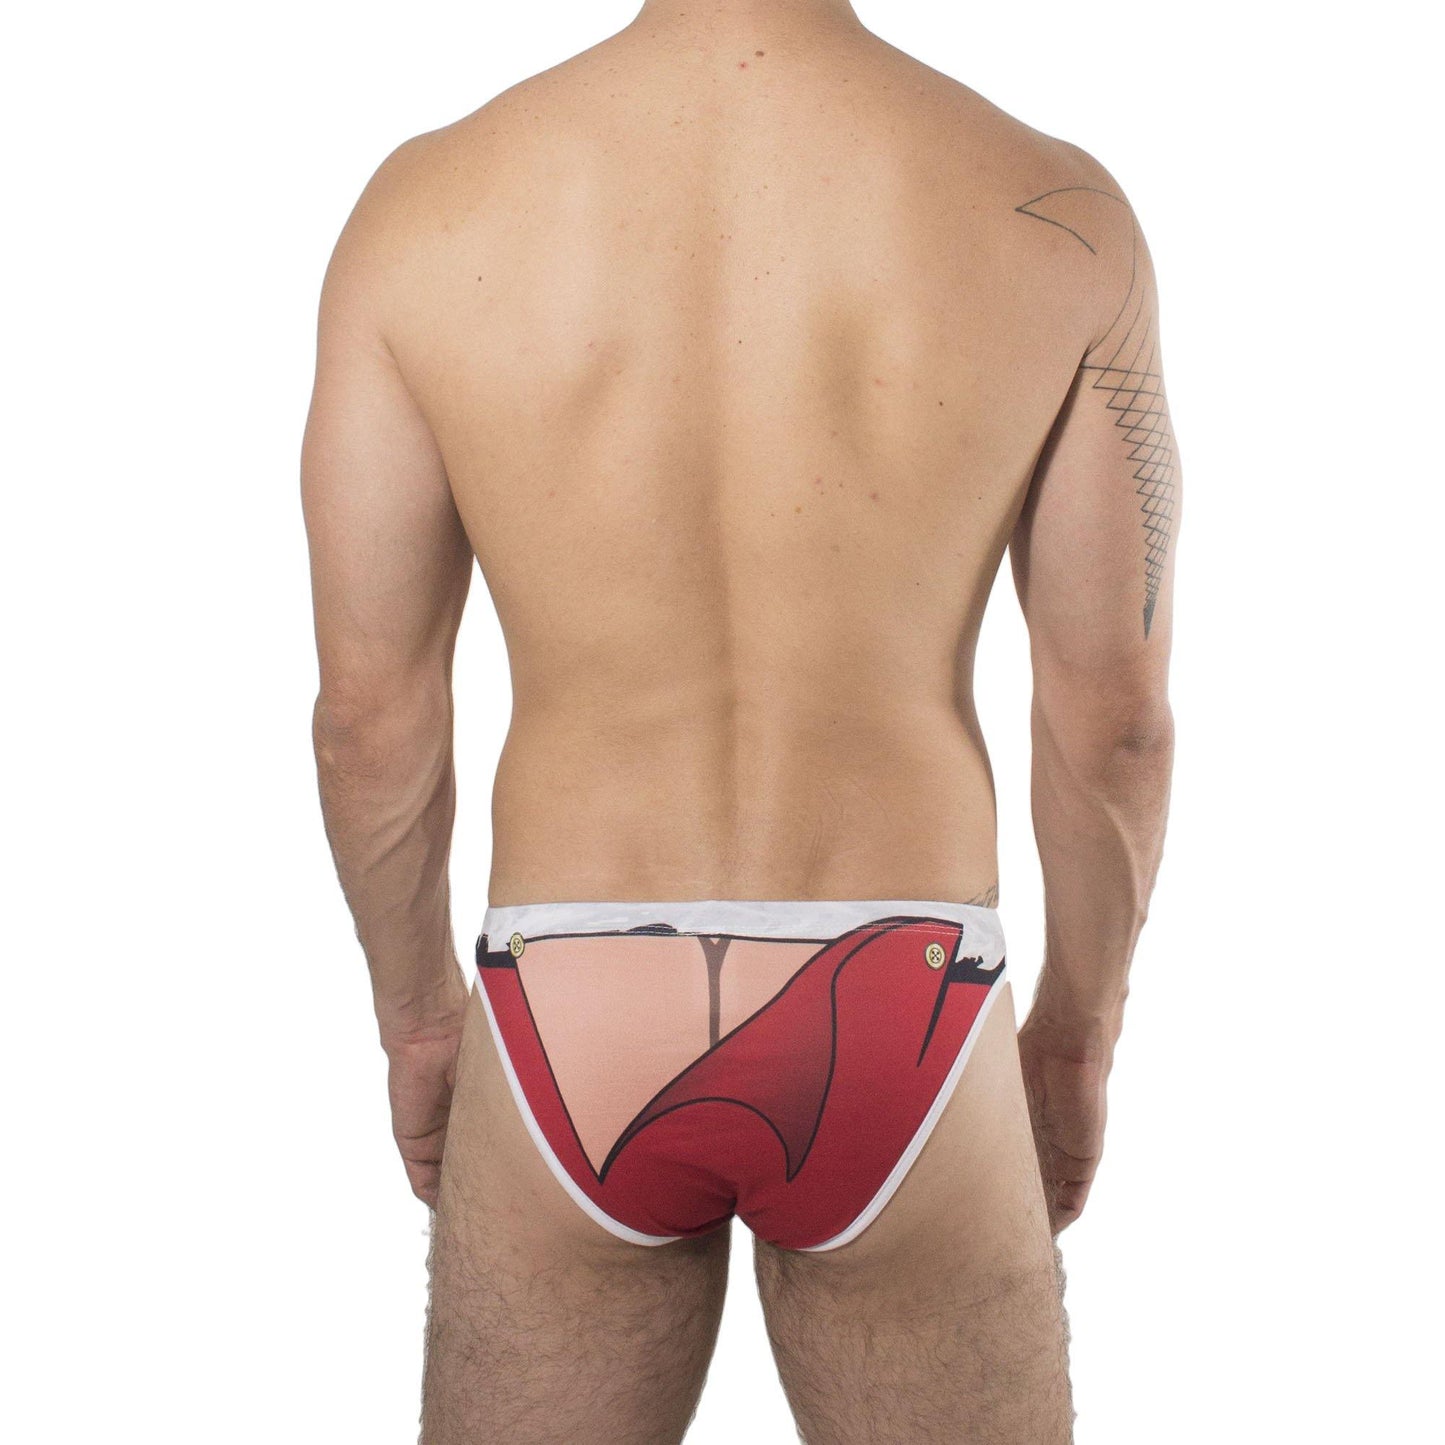 TC0001 - Brief Secret Santa - AlexandersKing Underwear